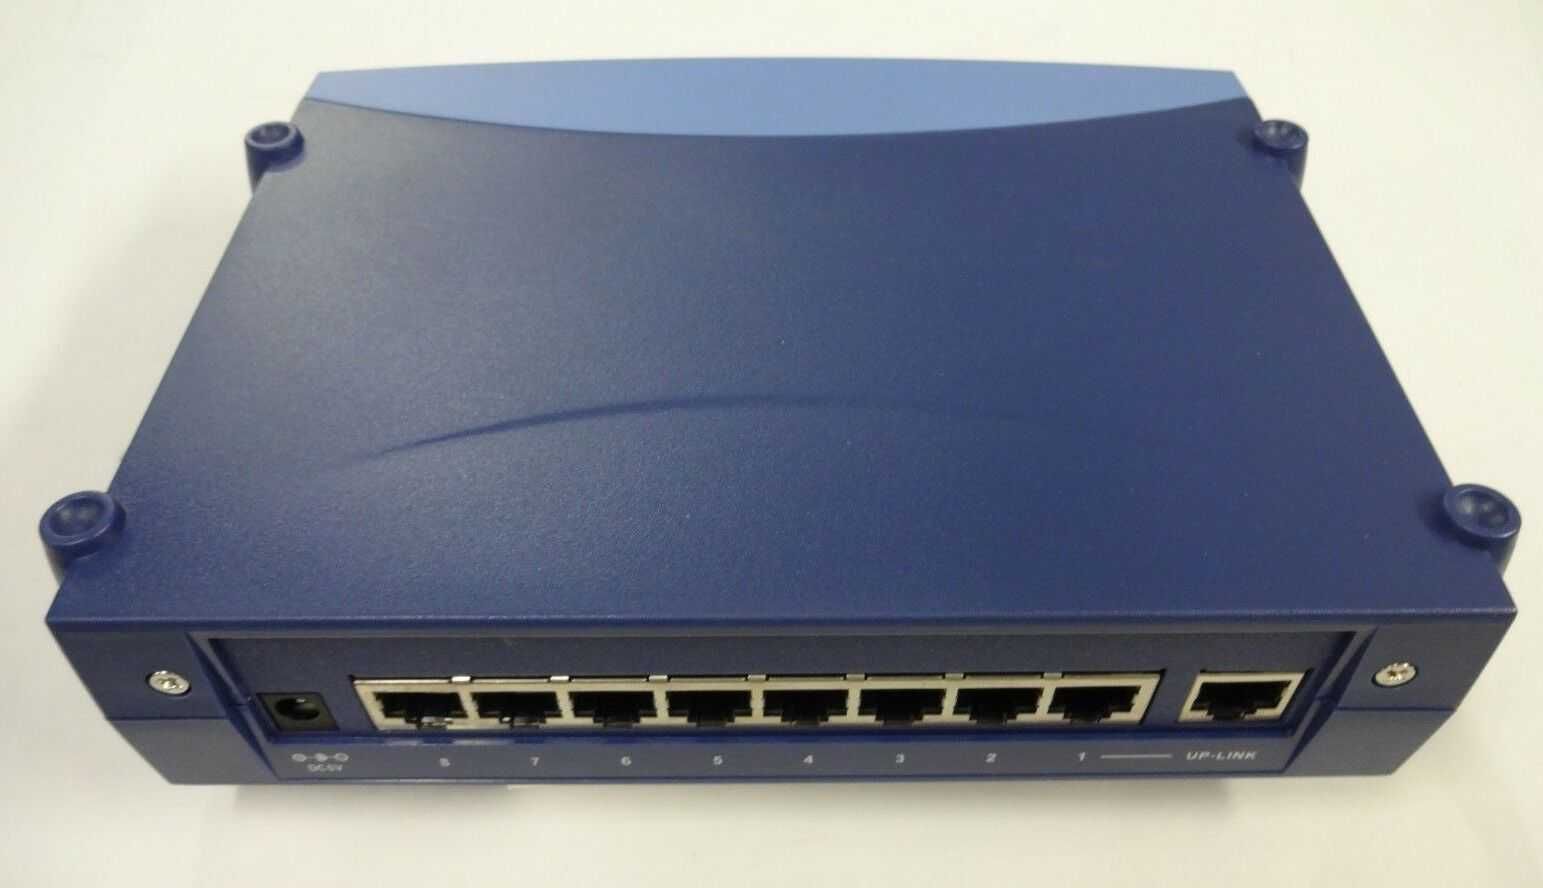 Продается 8-портовый LAN разветвитель OVISLINK